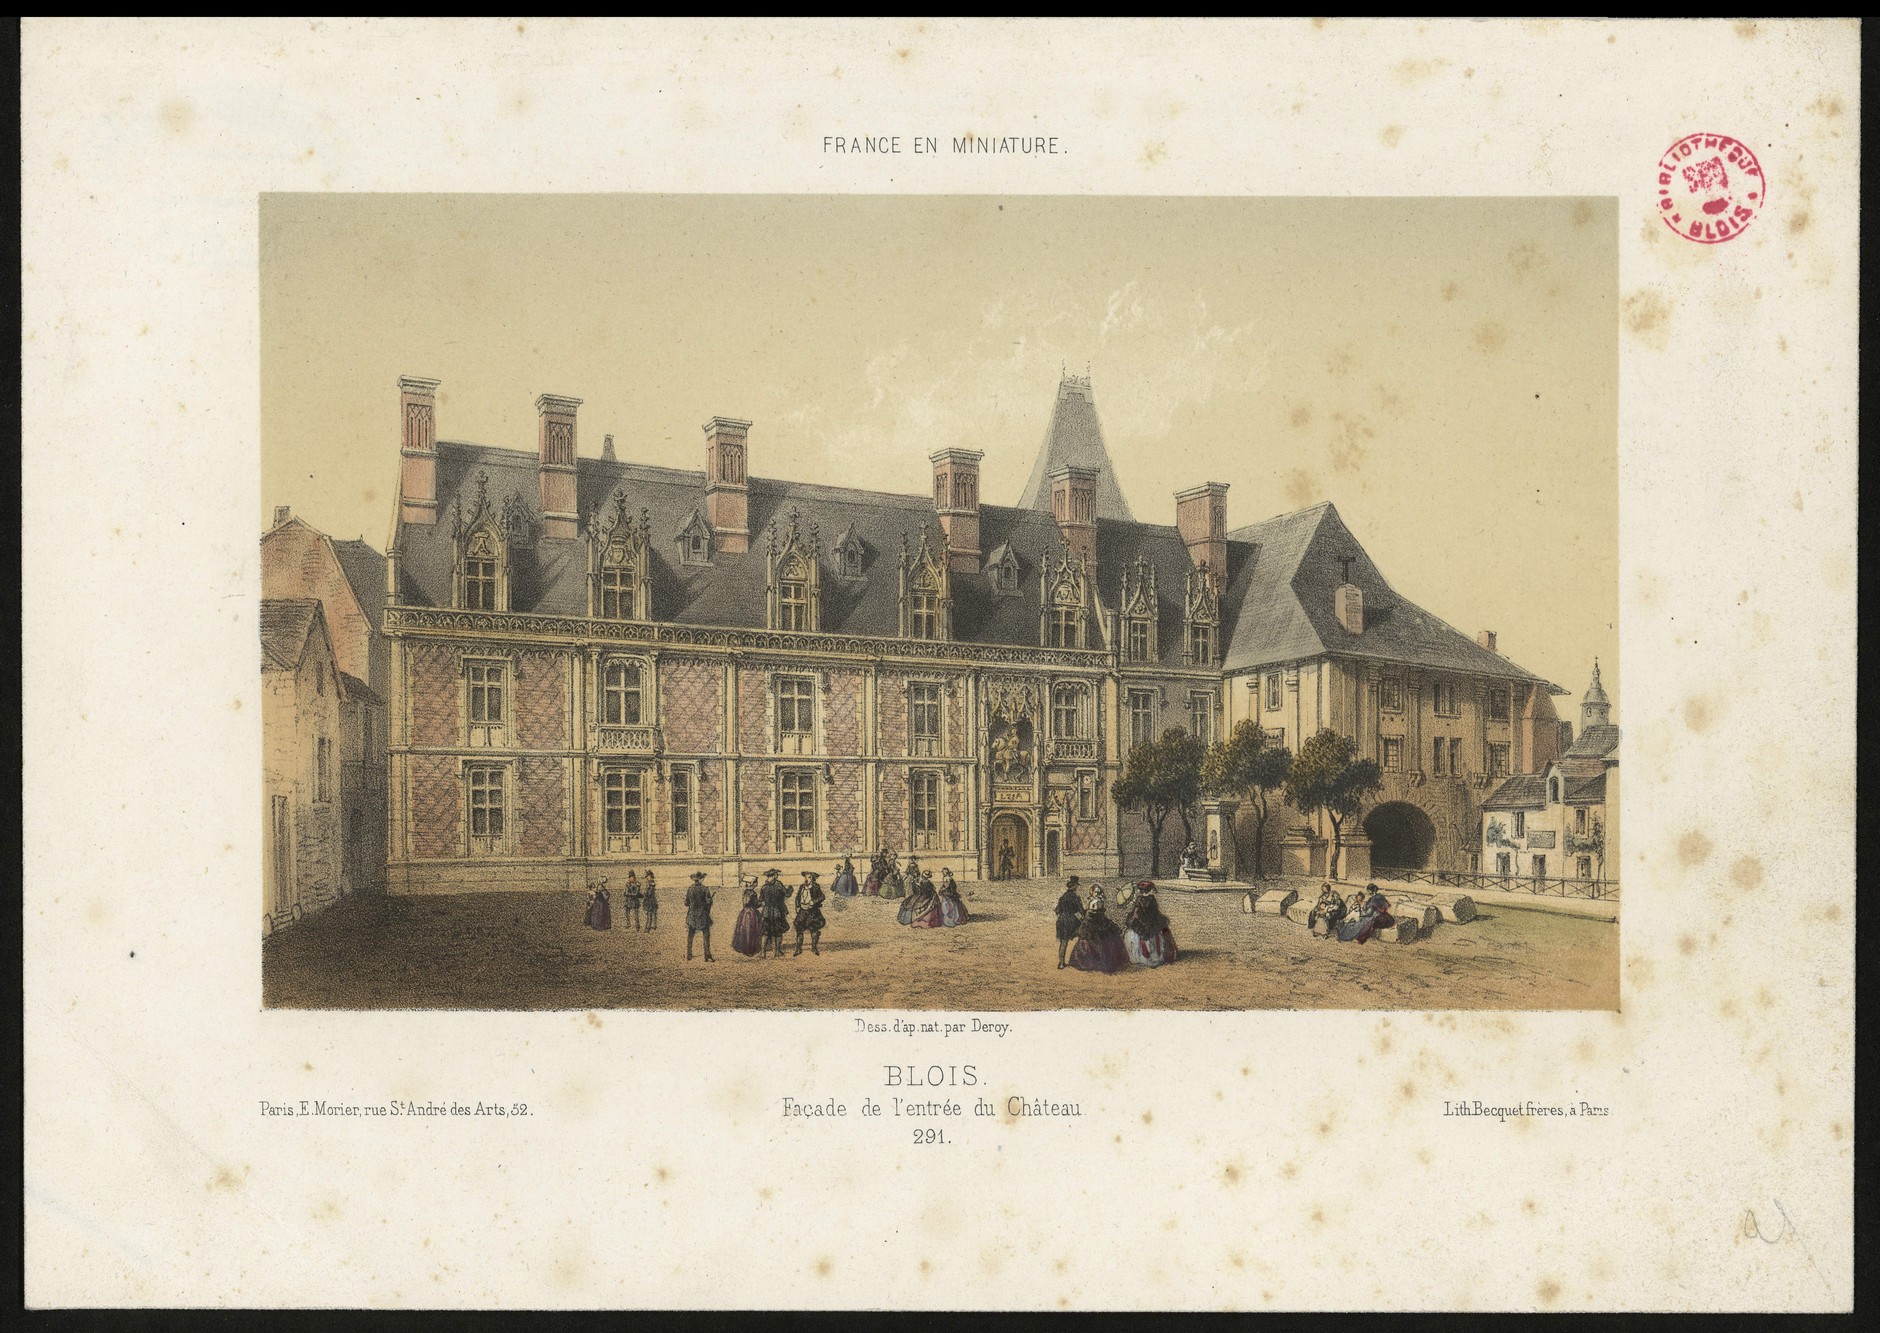 Deroy, Façade de l'entrée du château de Blois, lithographie vers 1855